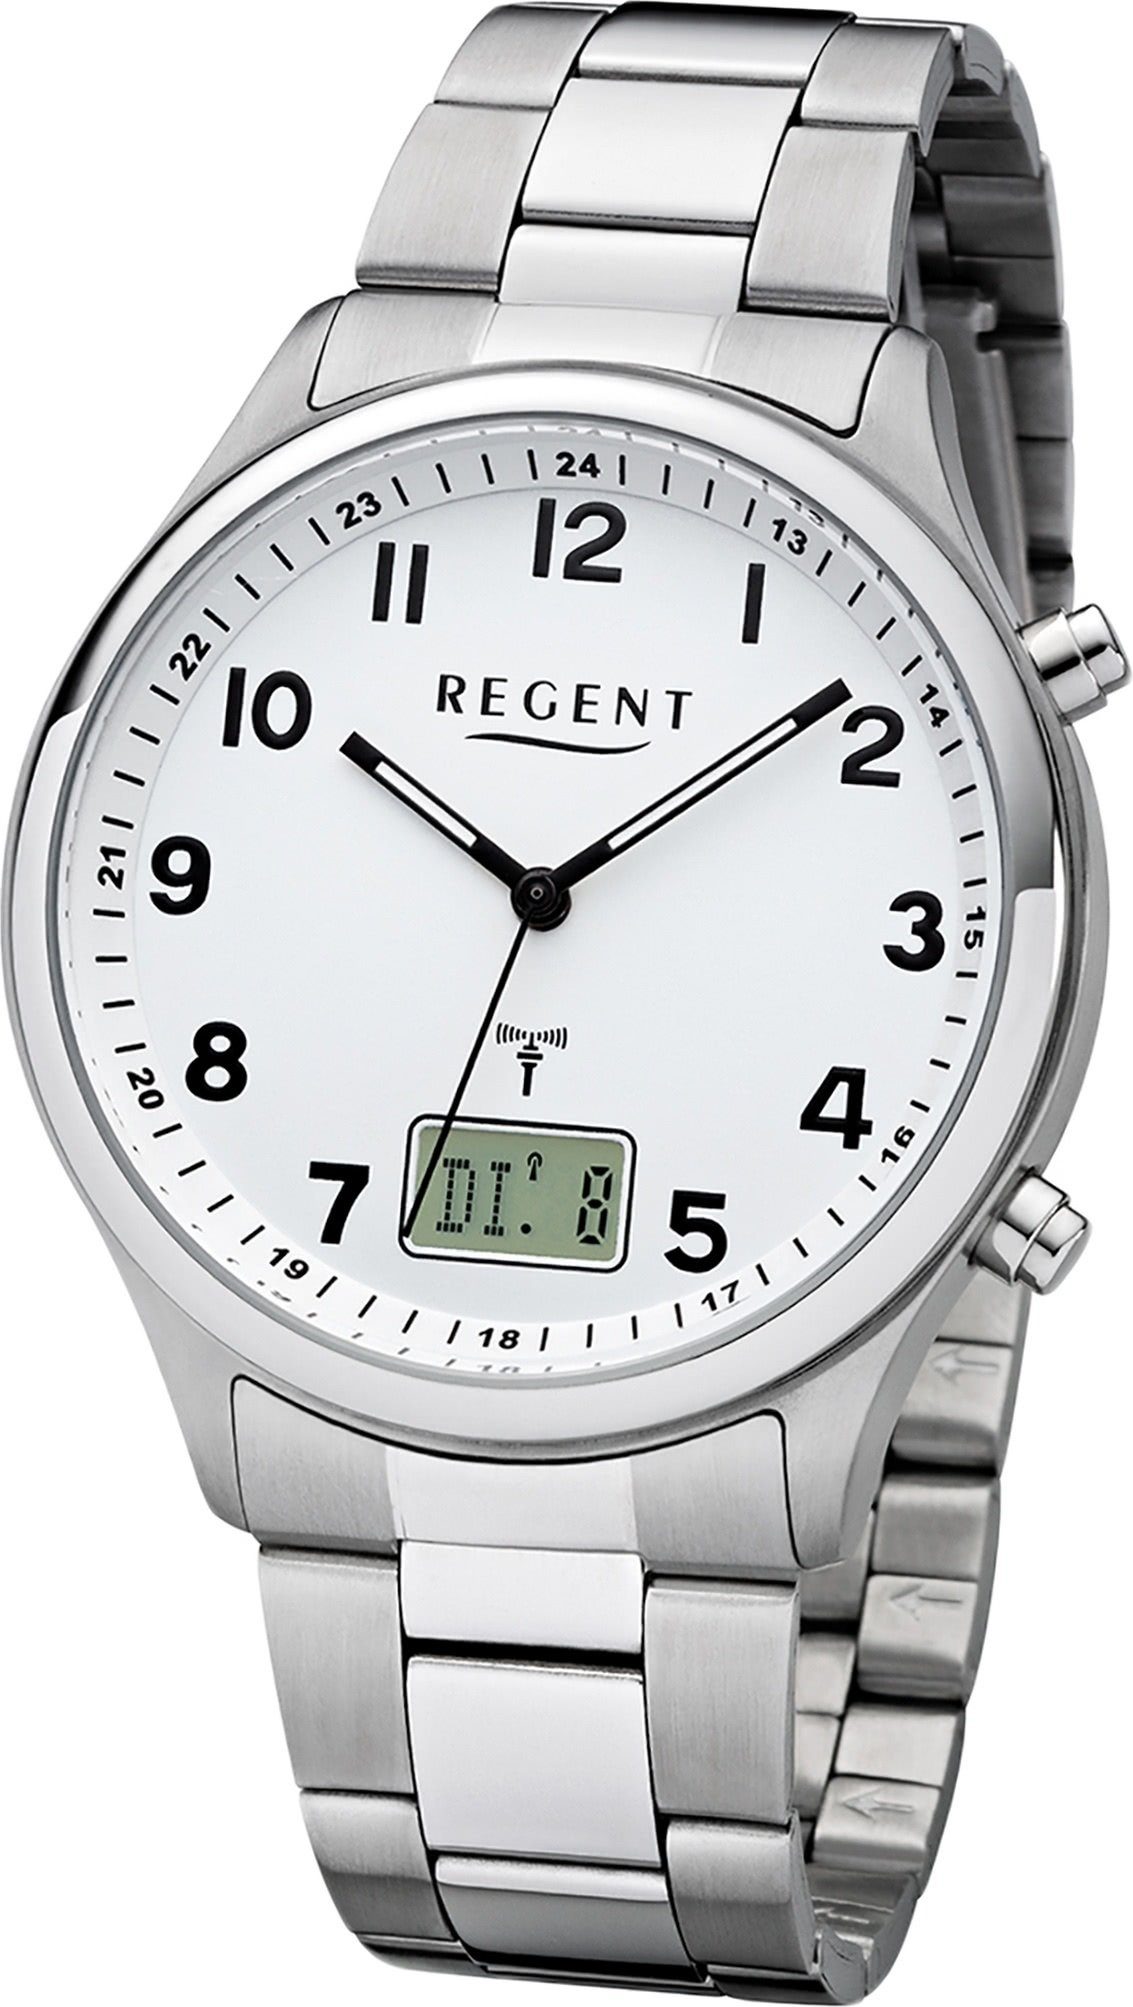 Regent Funkuhr Regent Metall Herren Uhr BA-444, Herrenuhr Metallarmband silber, rundes Gehäuse, groß (ca. 40mm)